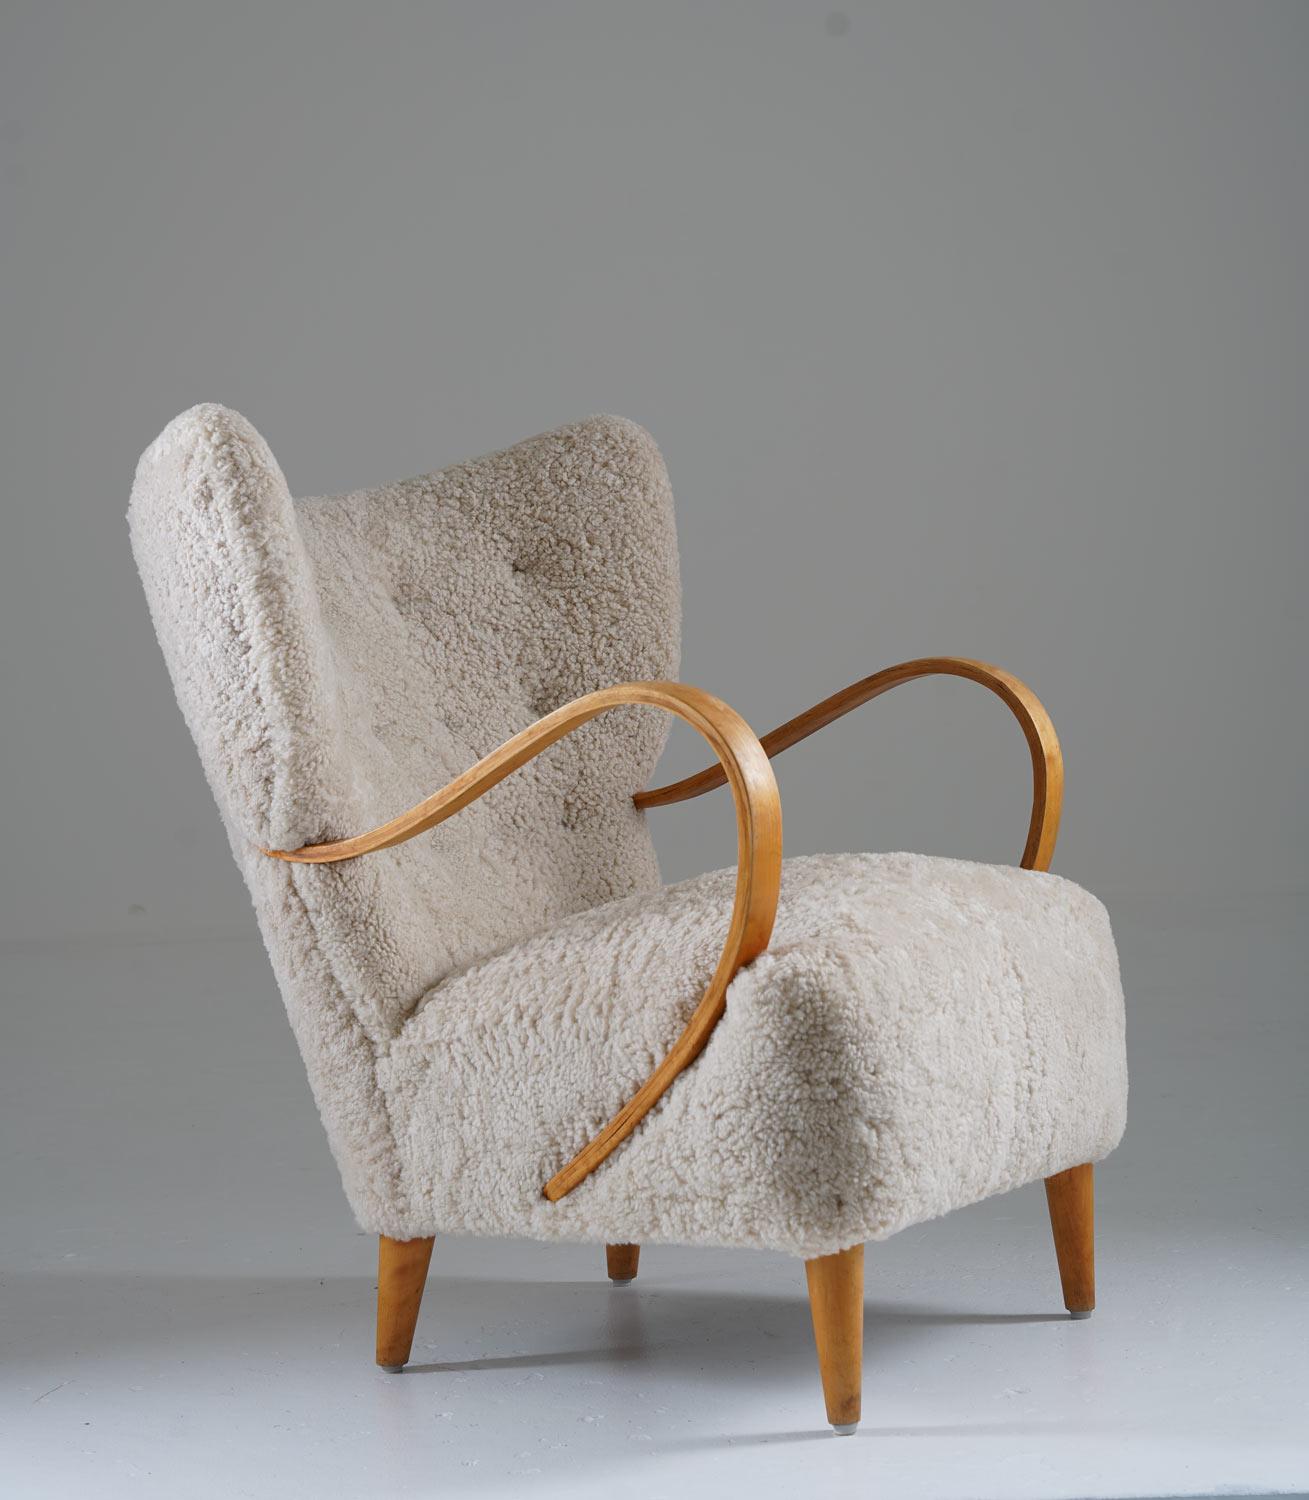 Schöner Ohrensessel, hergestellt in Schweden um 1950.
Mit seinem schlichten, organischen Design und den harmonischen Proportionen ist dieser Stuhl ein Blickfang in jeder modernen Wohnung. 

Zustand: Sehr guter Vintage-Zustand. Leichte Alters- und